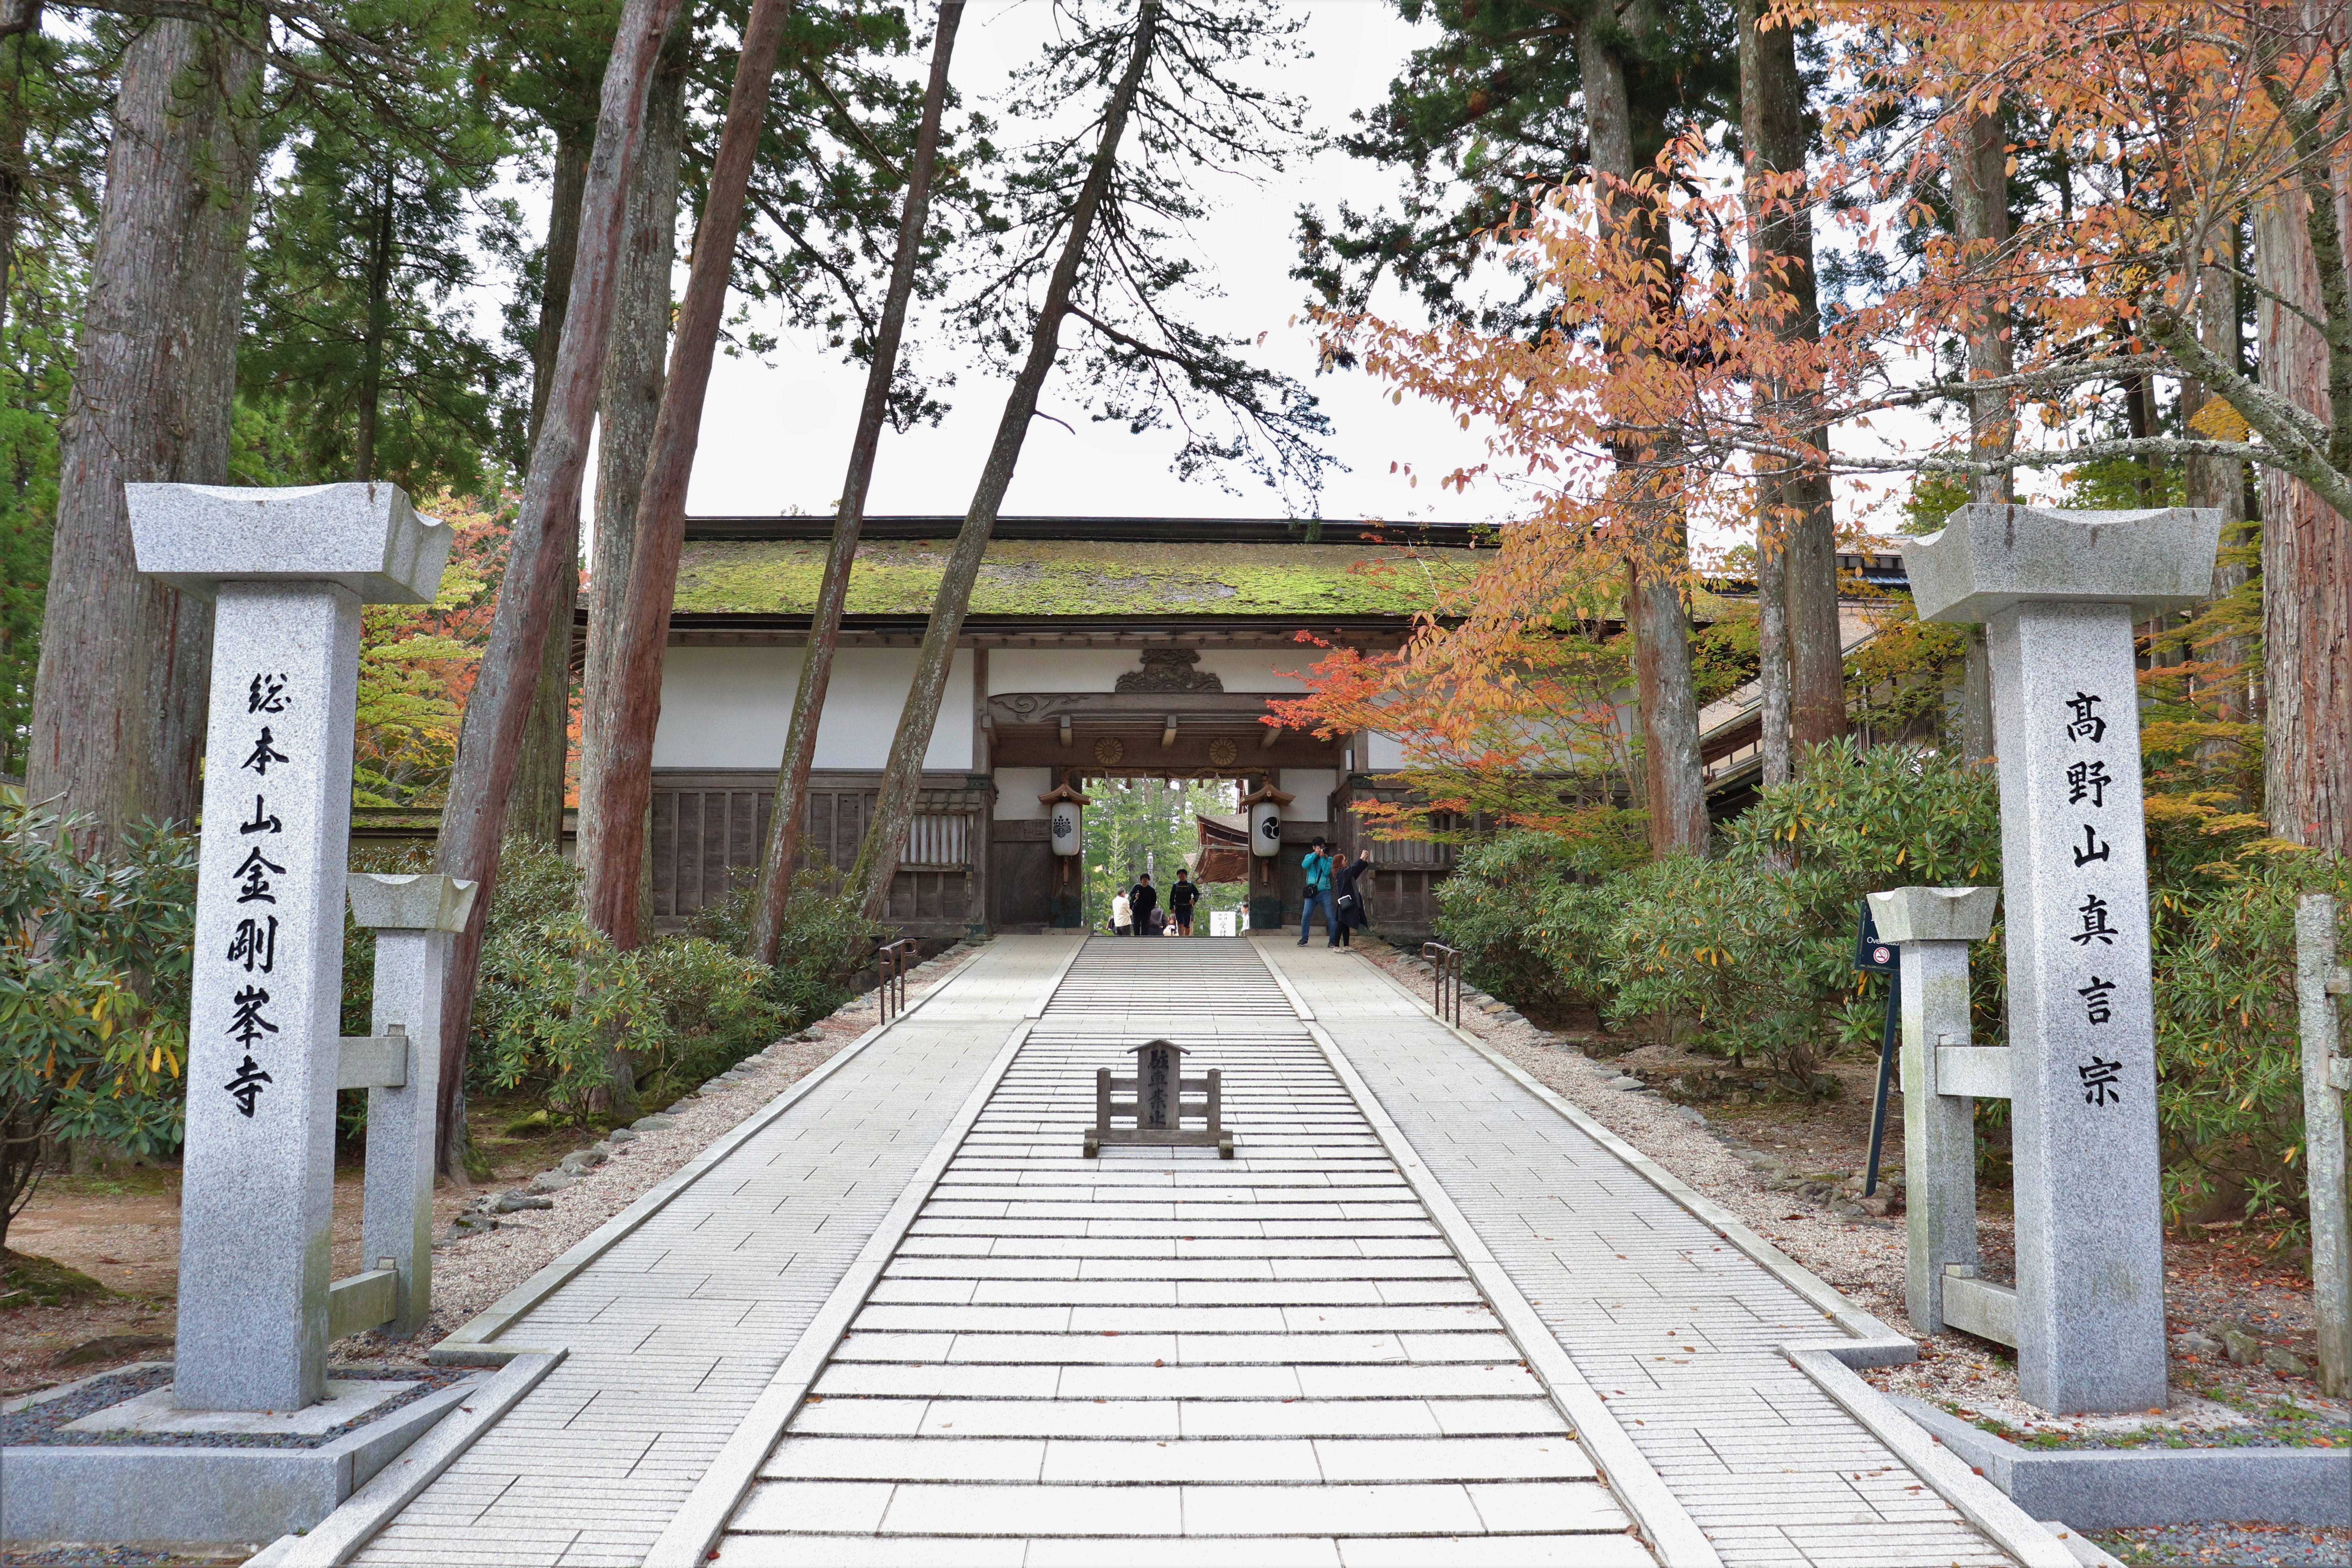 Gate of Kongobu-ji at koyasan in wakayama Japan